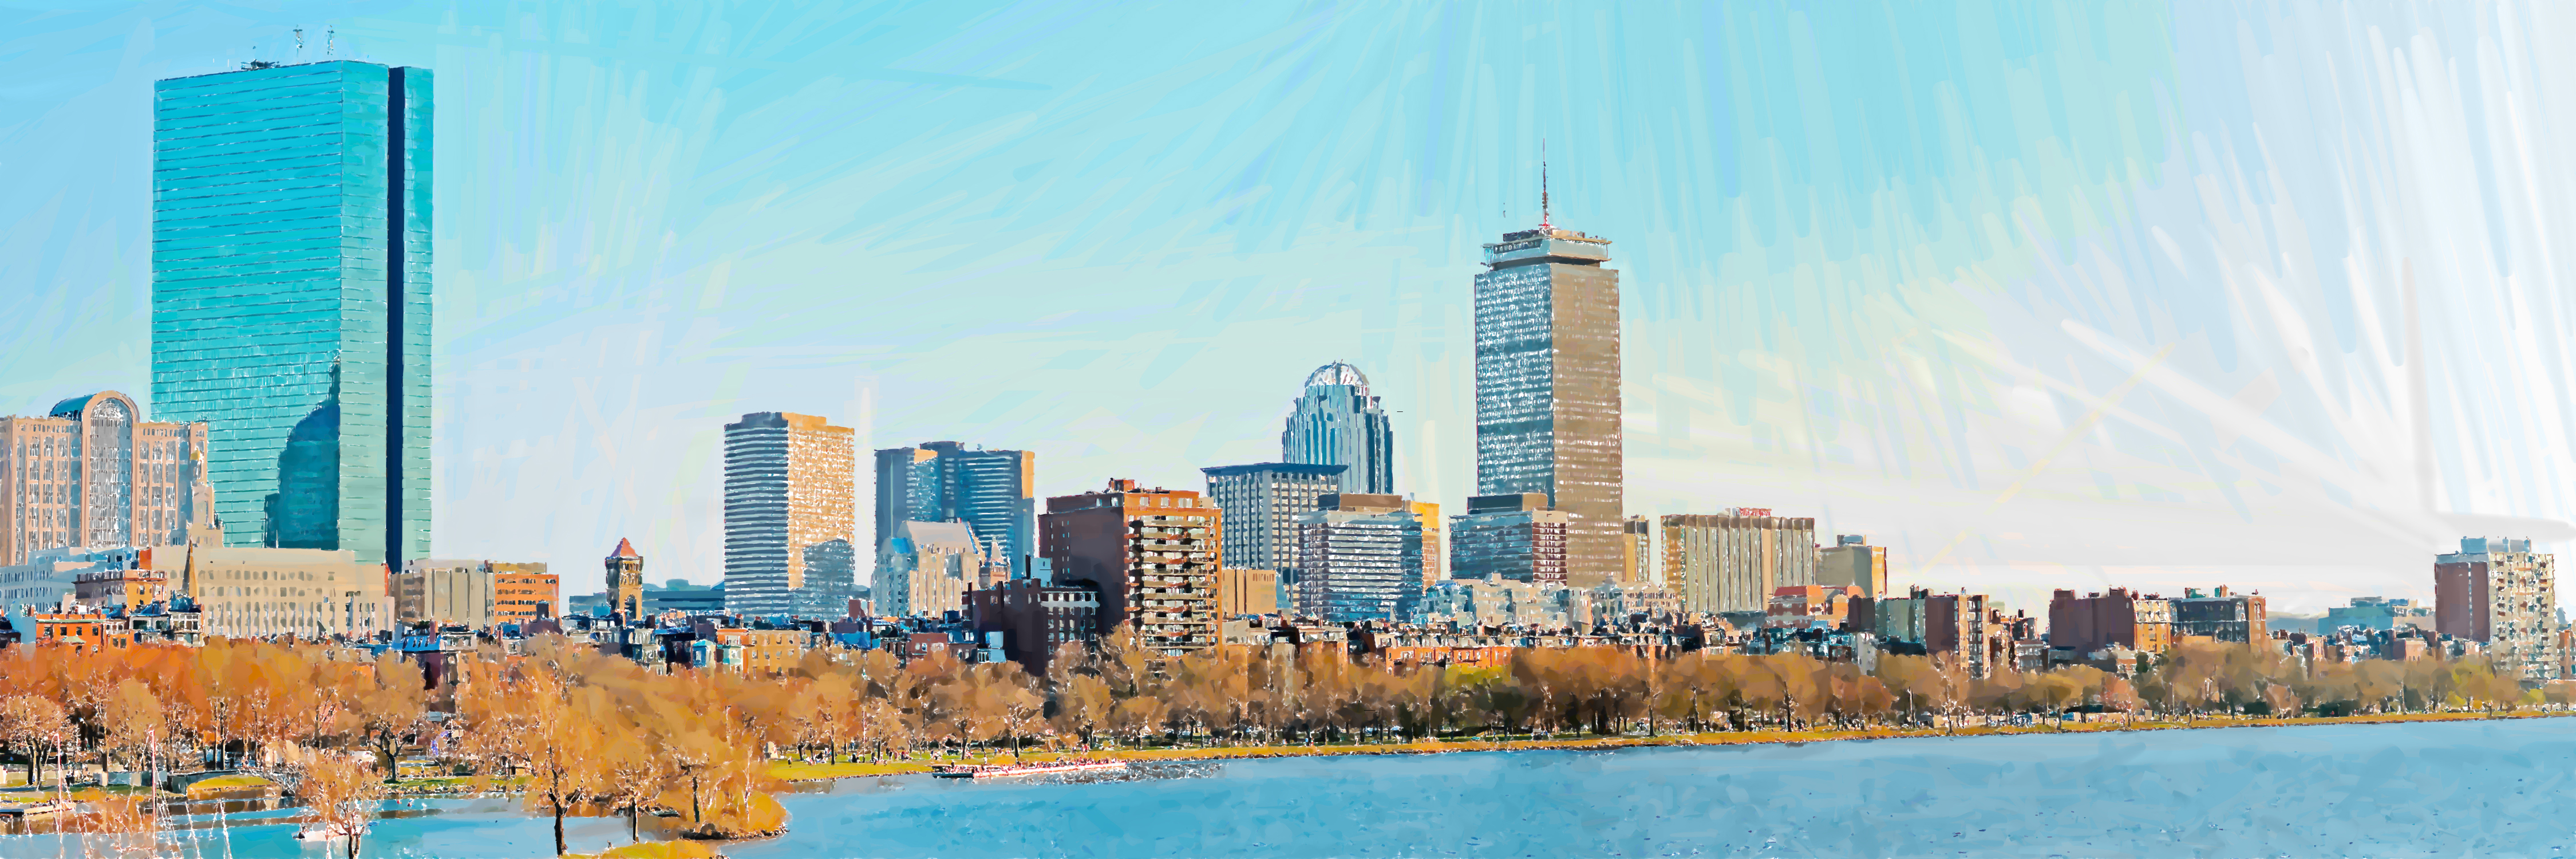 Boston Panoramic by maXX2707